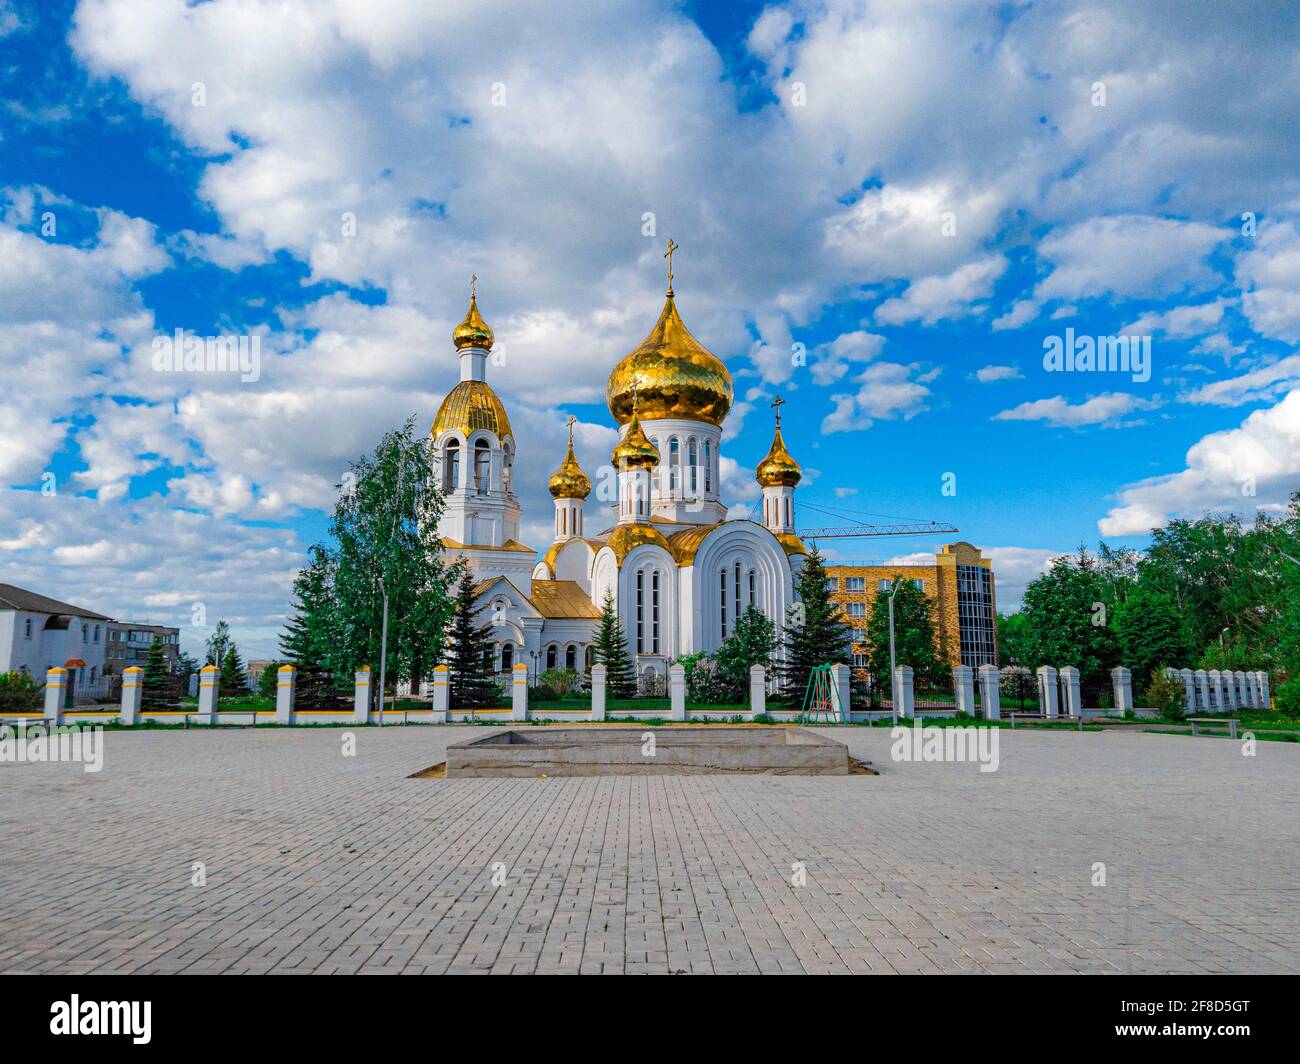 Chiesa cristiana ortodossa nella campagna russa Foto Stock